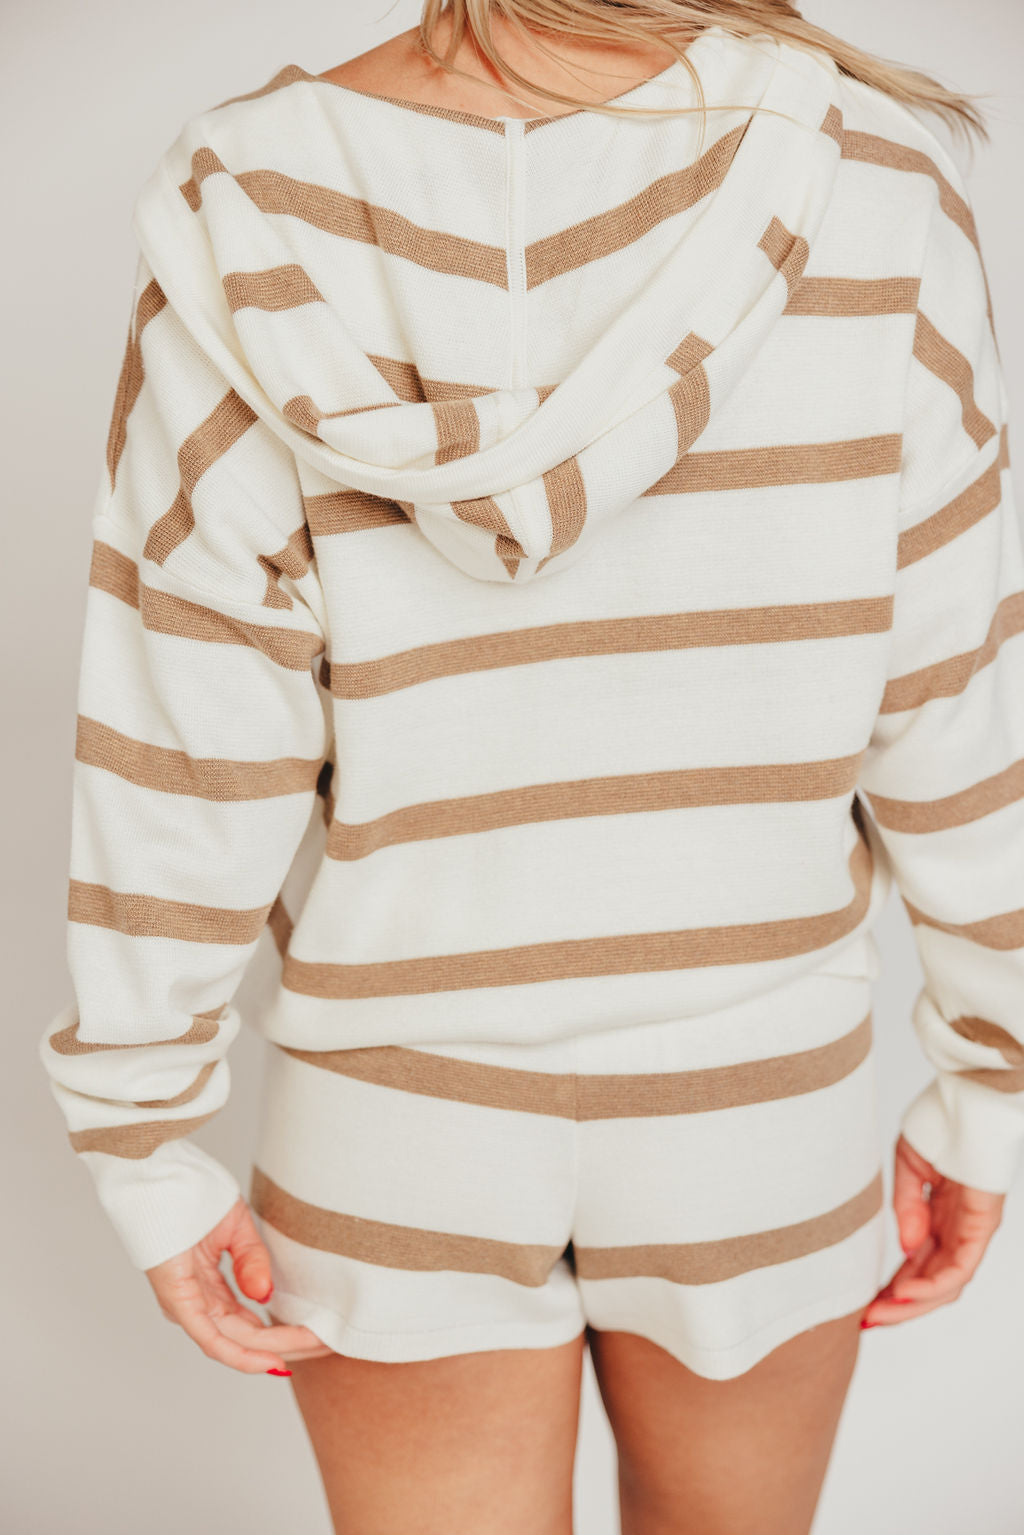 Brighton Pullover Top in White and Wheat Stripe